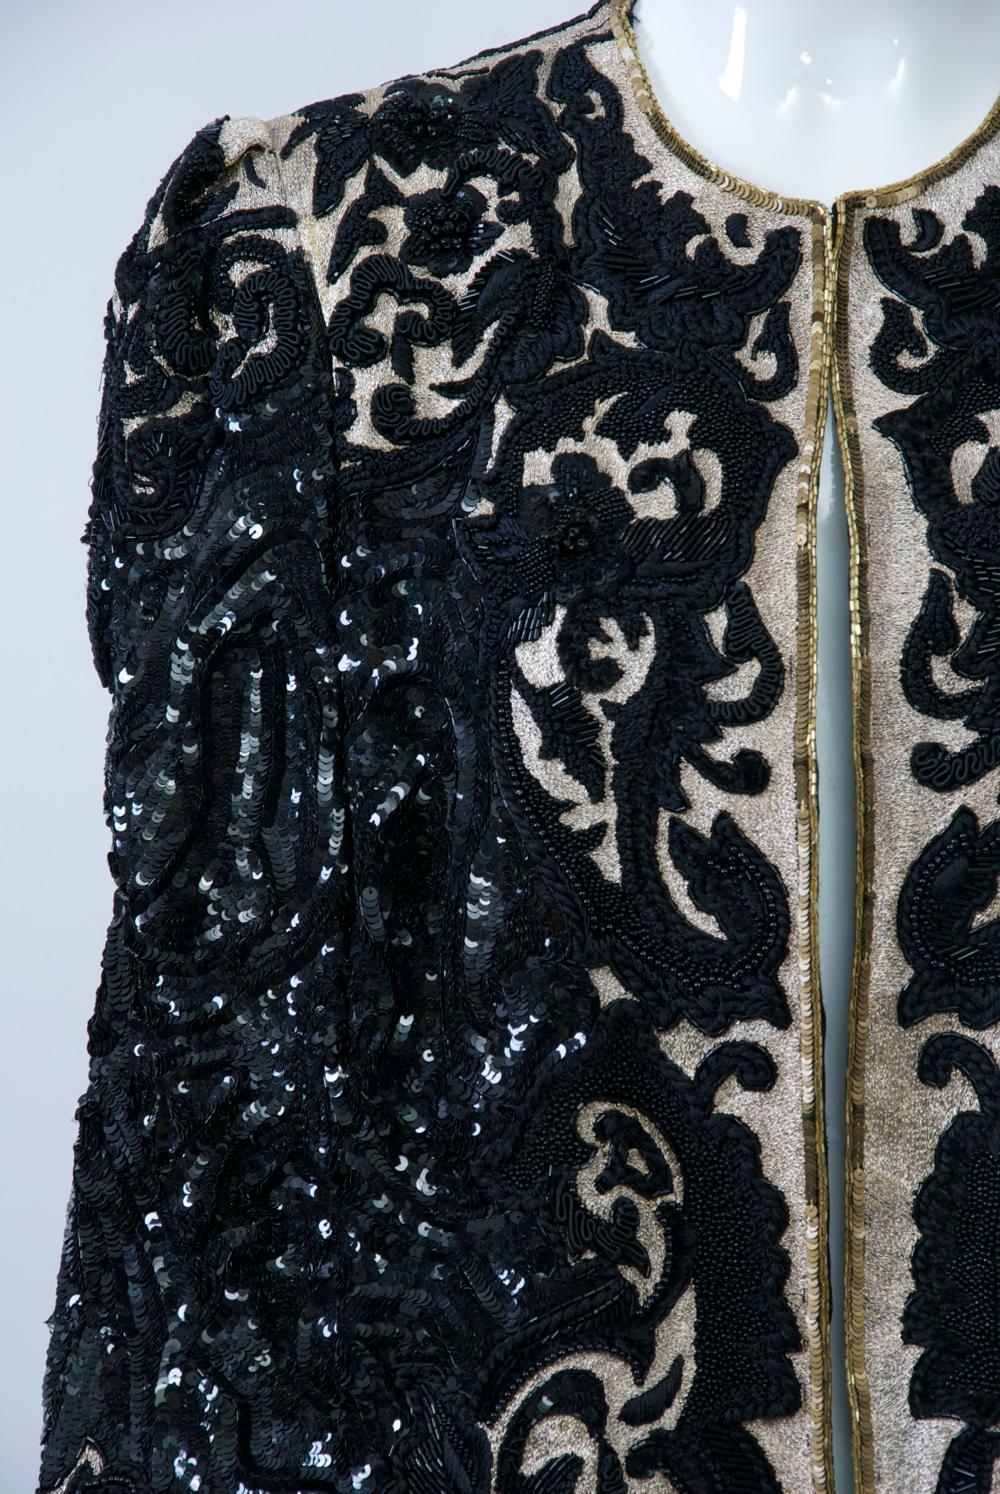 Extravagant verzierte Abendjacke von Richilene, um 1980, mit Stickereien, Soutache und Perlen auf komplementären Grundstoffen, entweder einfarbig schwarz oder mit Goldfäden, die auf der Vorderseite und an den Ärmeln hervorgehoben sind. Eine schmale